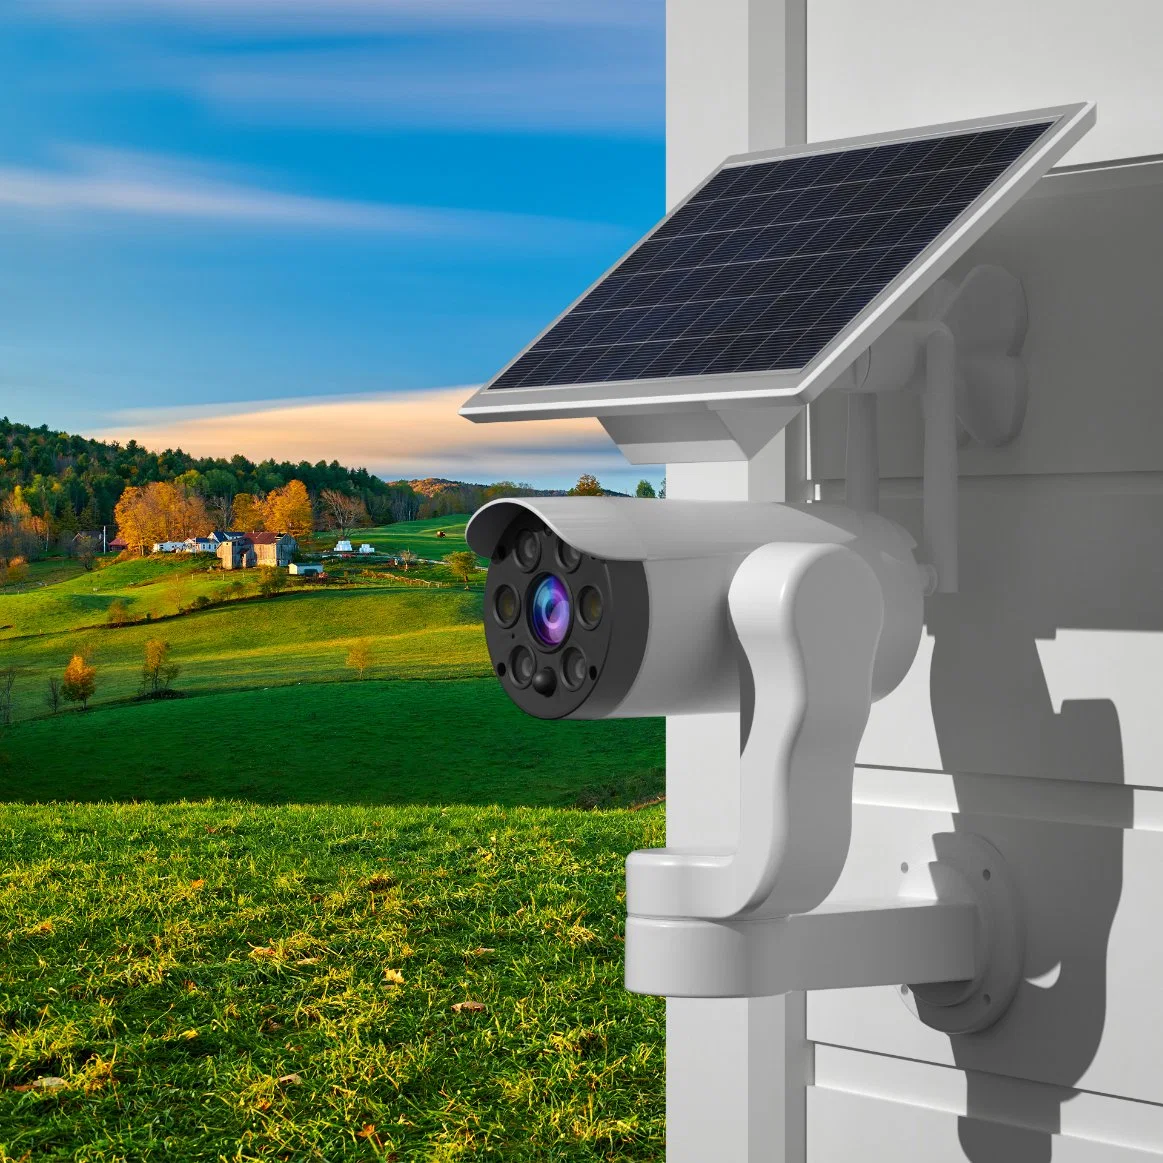 كاميرا مراقبة اللوحة الشمسية اللاسلكية WiFi من كاميرا الأمان الخارجية المزودة بنظام WiFi البطارية 18650 إنذار مراقبة المنزل بواسطة الأشعة تحت الحمراء الذكية المقاومة للماء